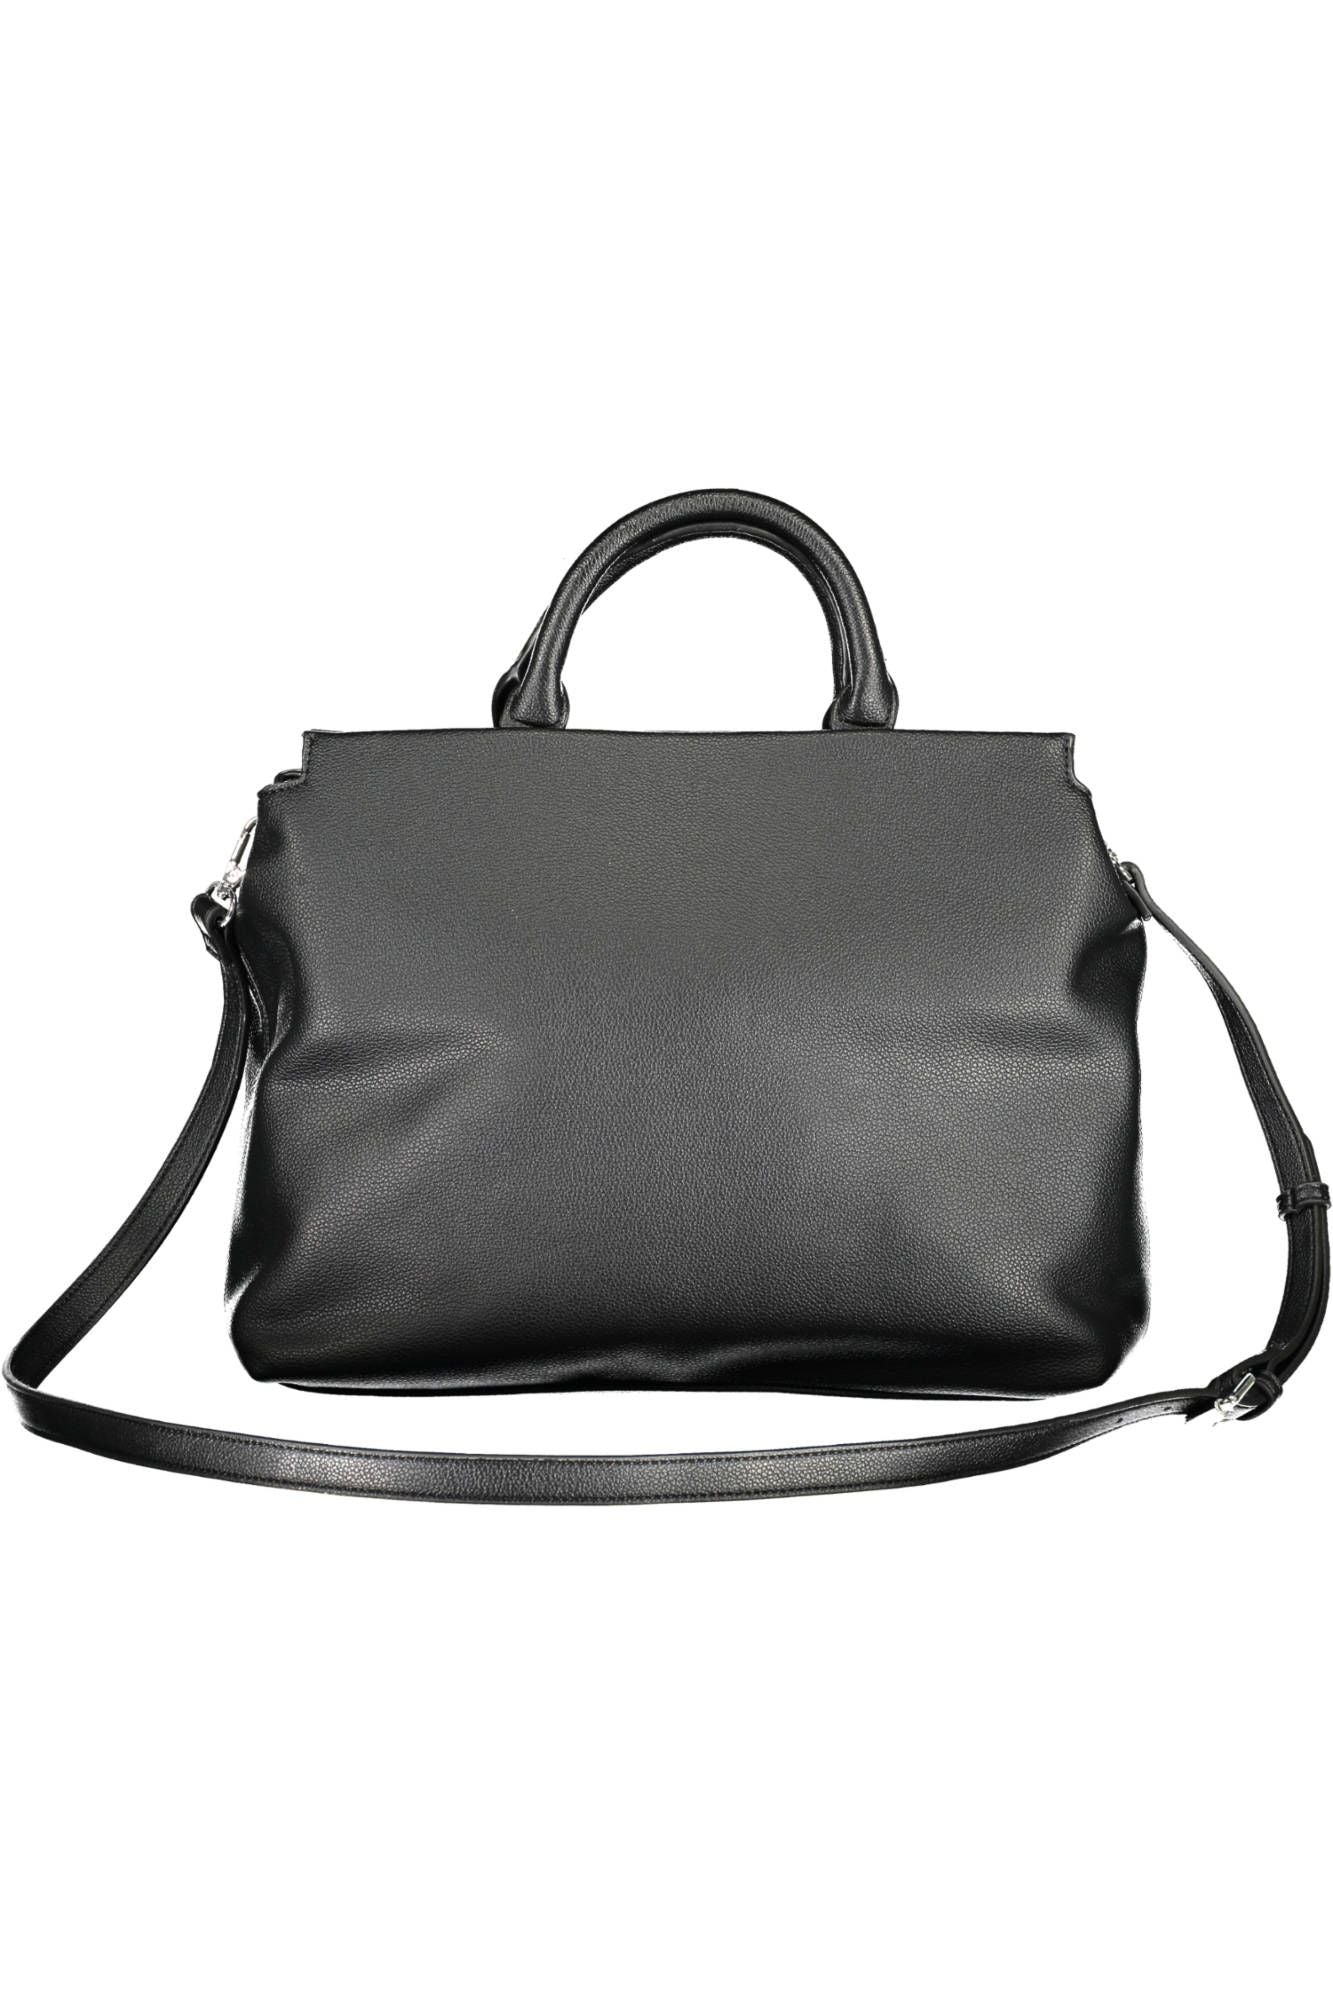 Byblos Elegant Two-Handle Black Handbag with Contrasting Details